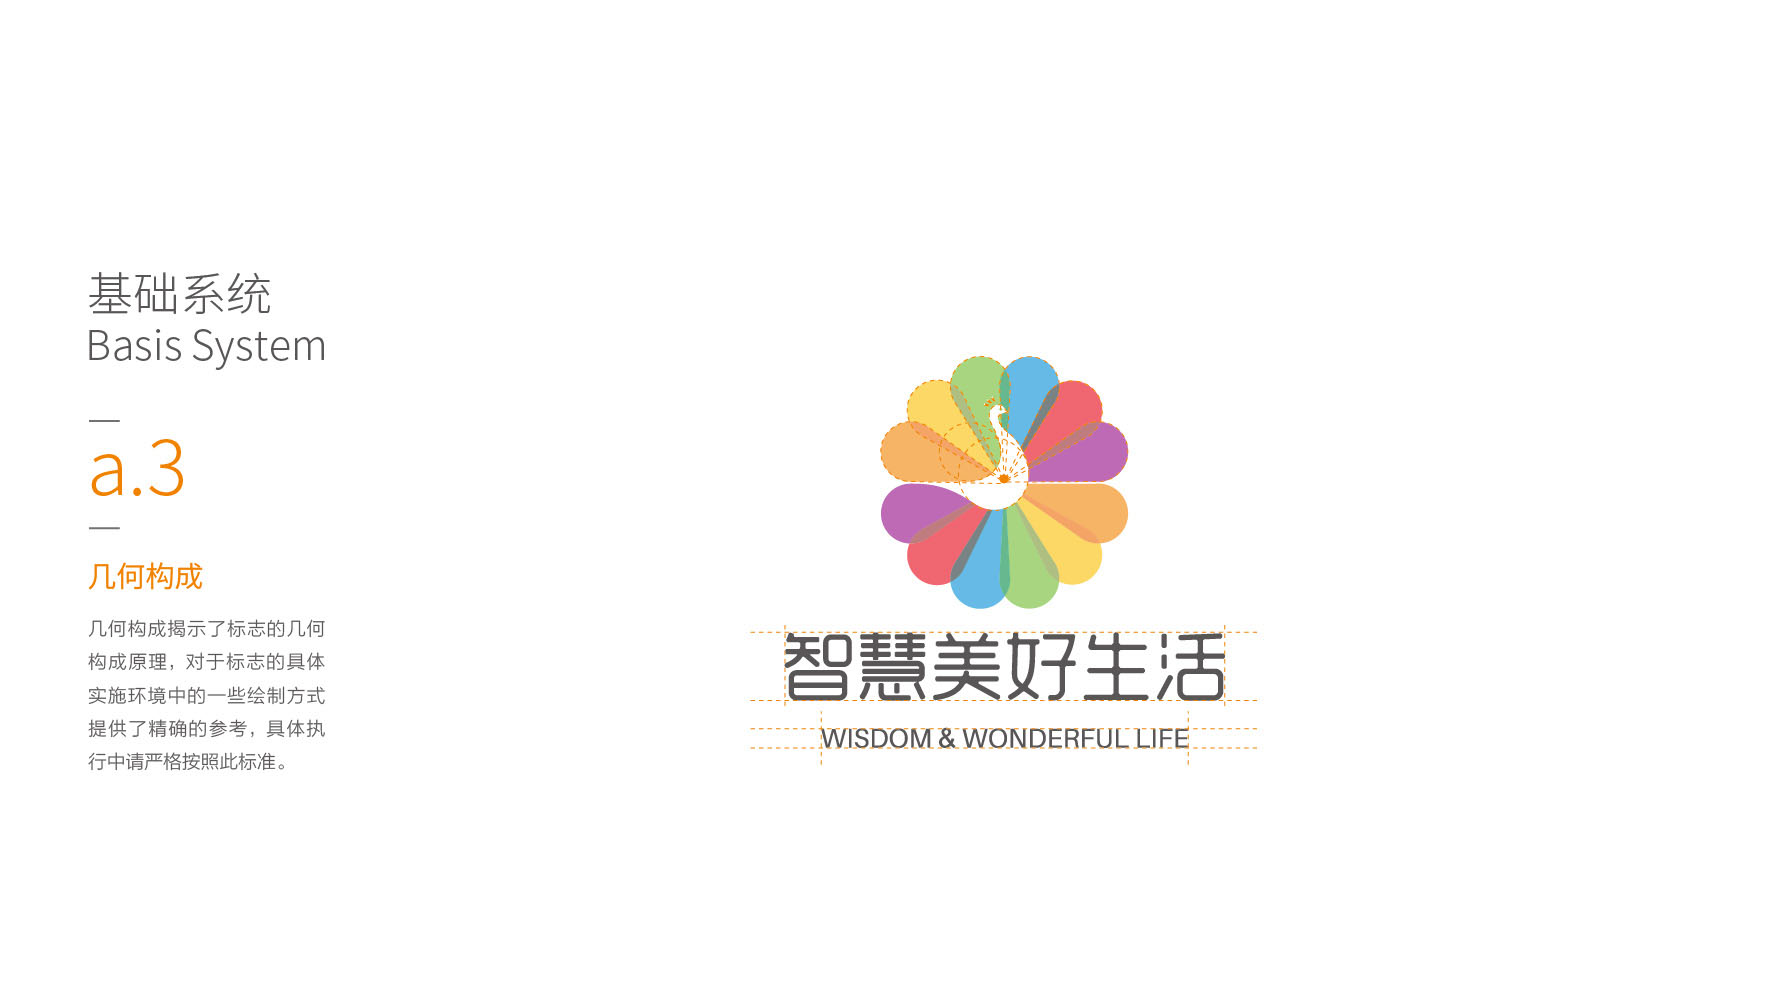 深圳养生logo设计-智慧美好生活标志设计12.jpg